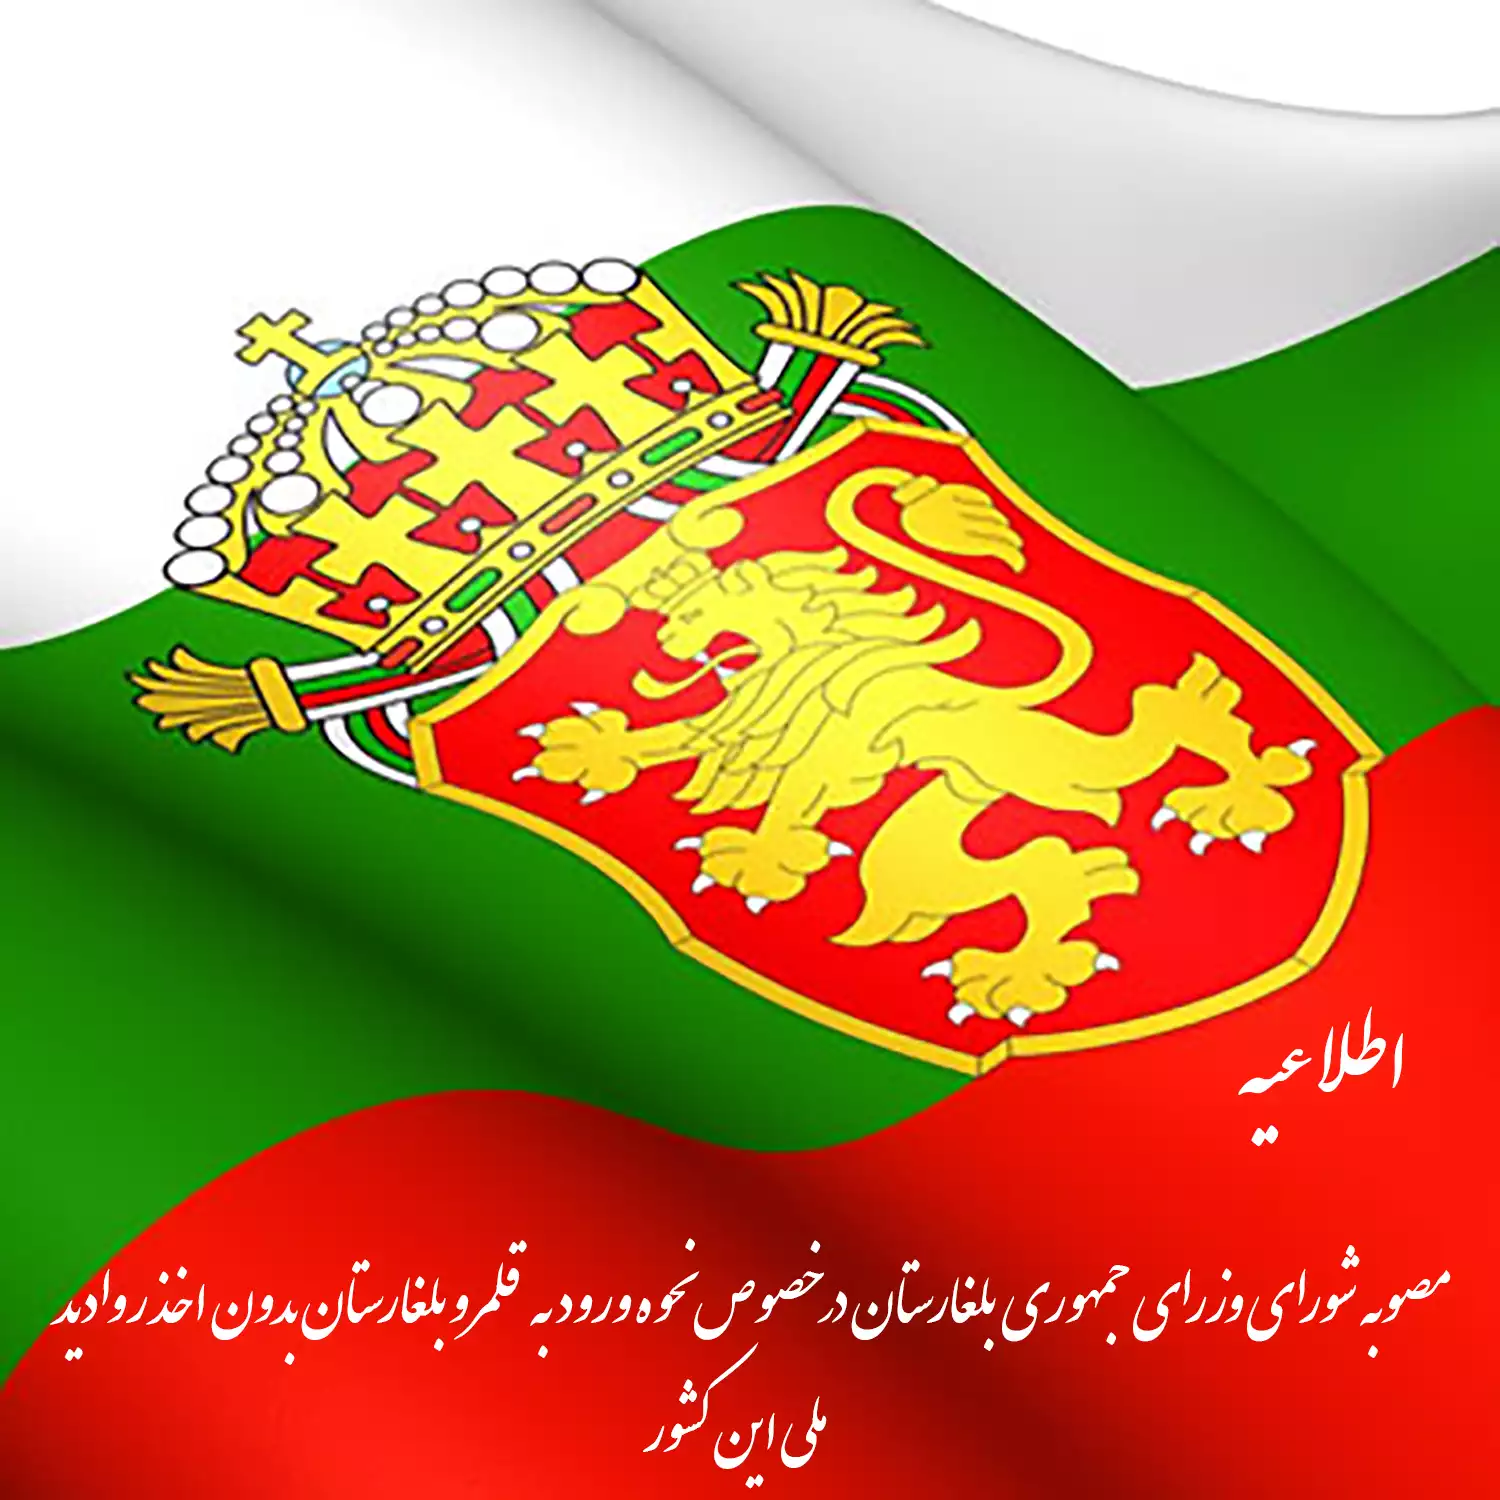 مصوبه شورای وزرای جمهوری بلغارستان در خصوص نحوه ورود به قلمرو بلغارستان بدون اخذ روادید ملی این کشور